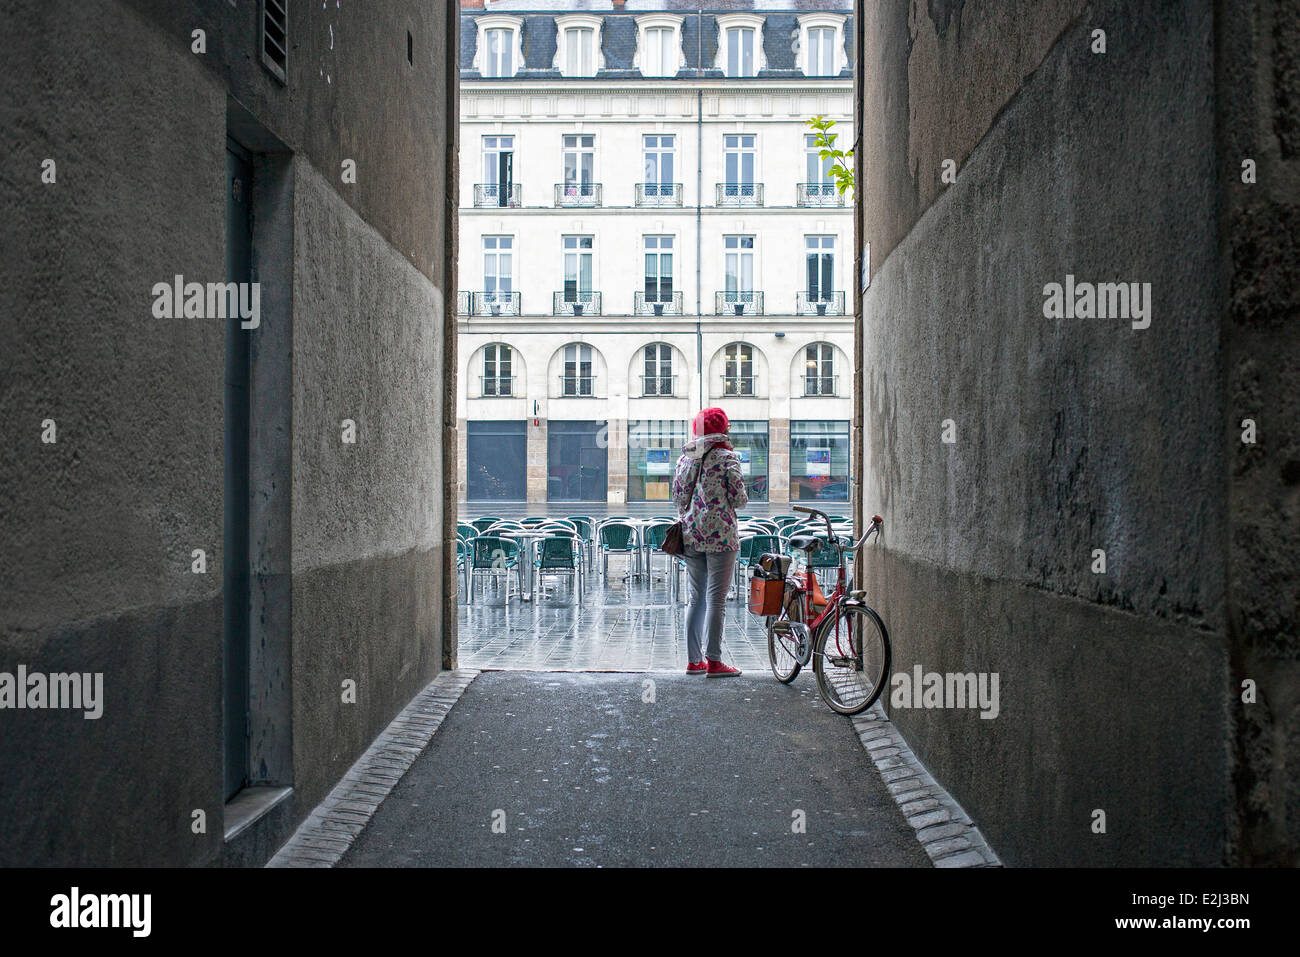 Radfahrer anhalten in Gasse, Place du Bouffay, Nantes, Loire-Atlantique, Frankreich Stockfoto